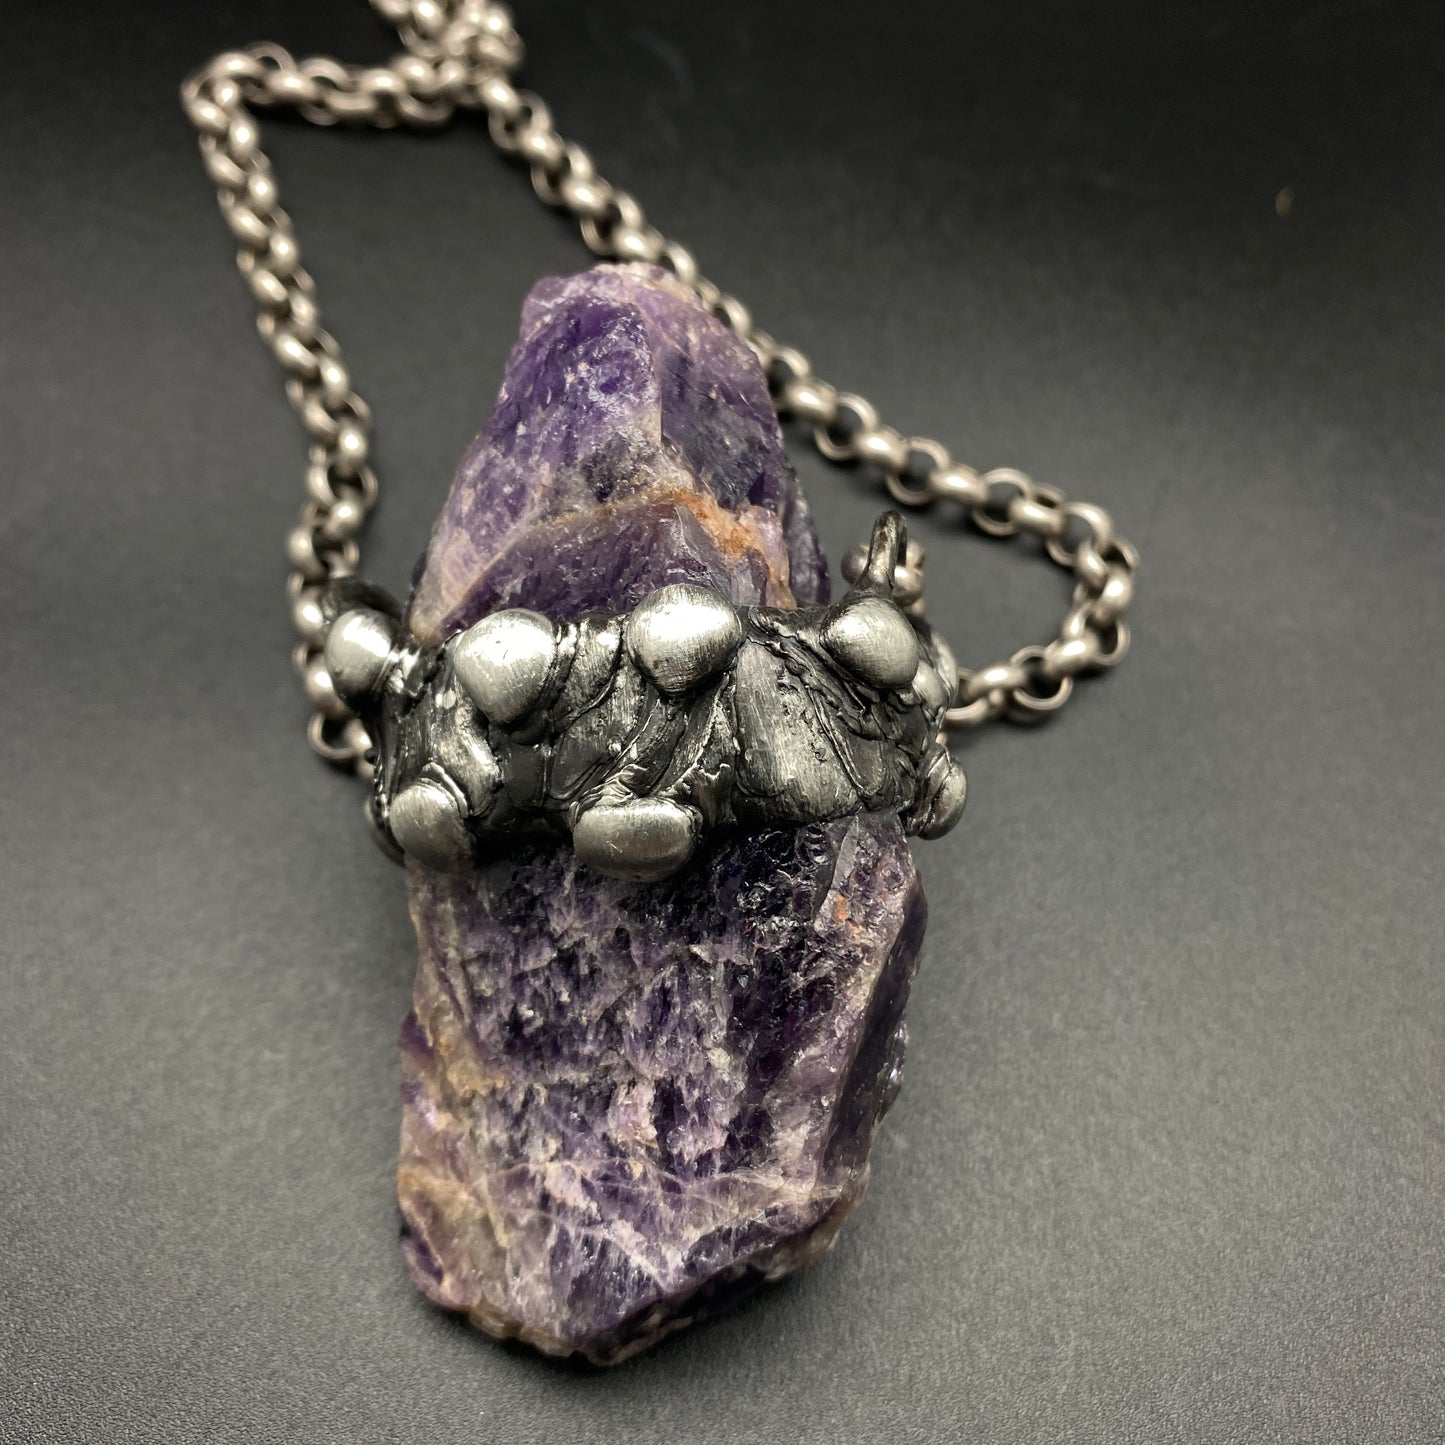 Conjure ~ Amethyst Druzy Crystal Necklace